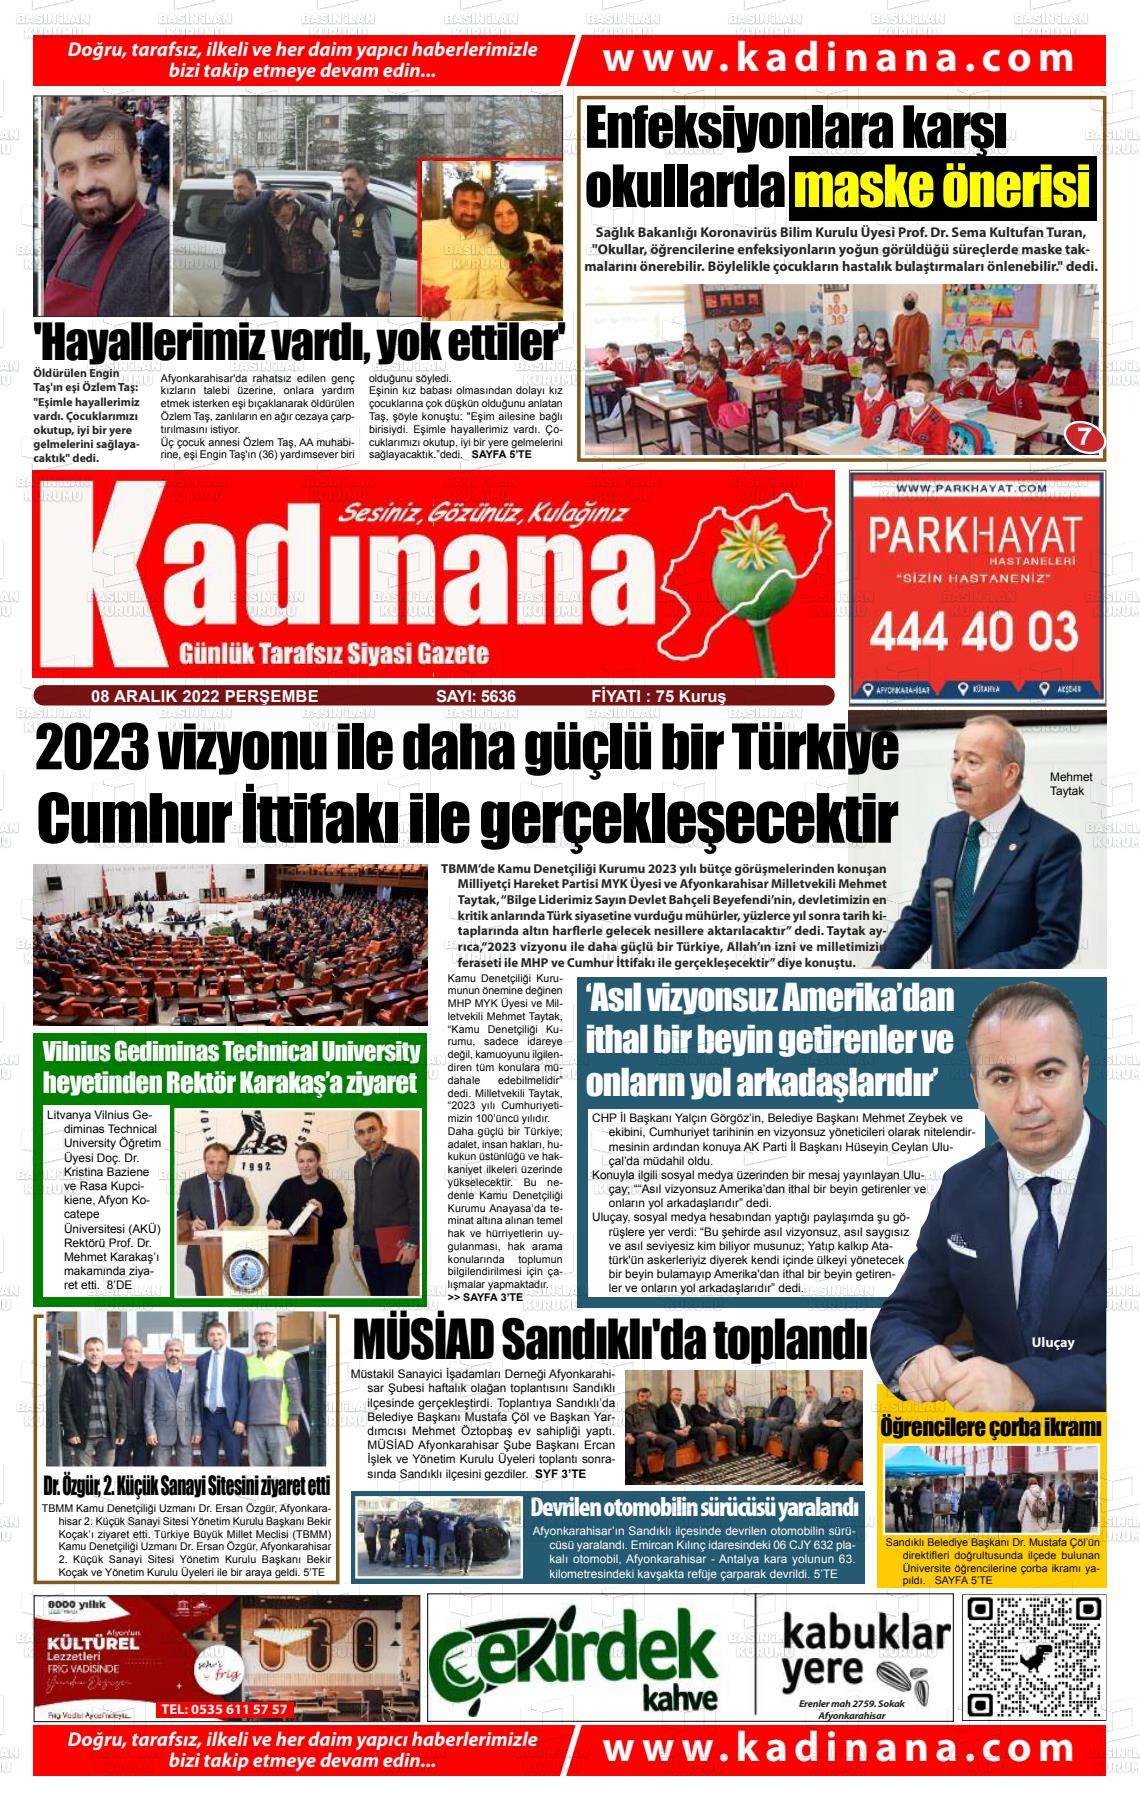 08 Aralık 2022 Kadınana Gazete Manşeti